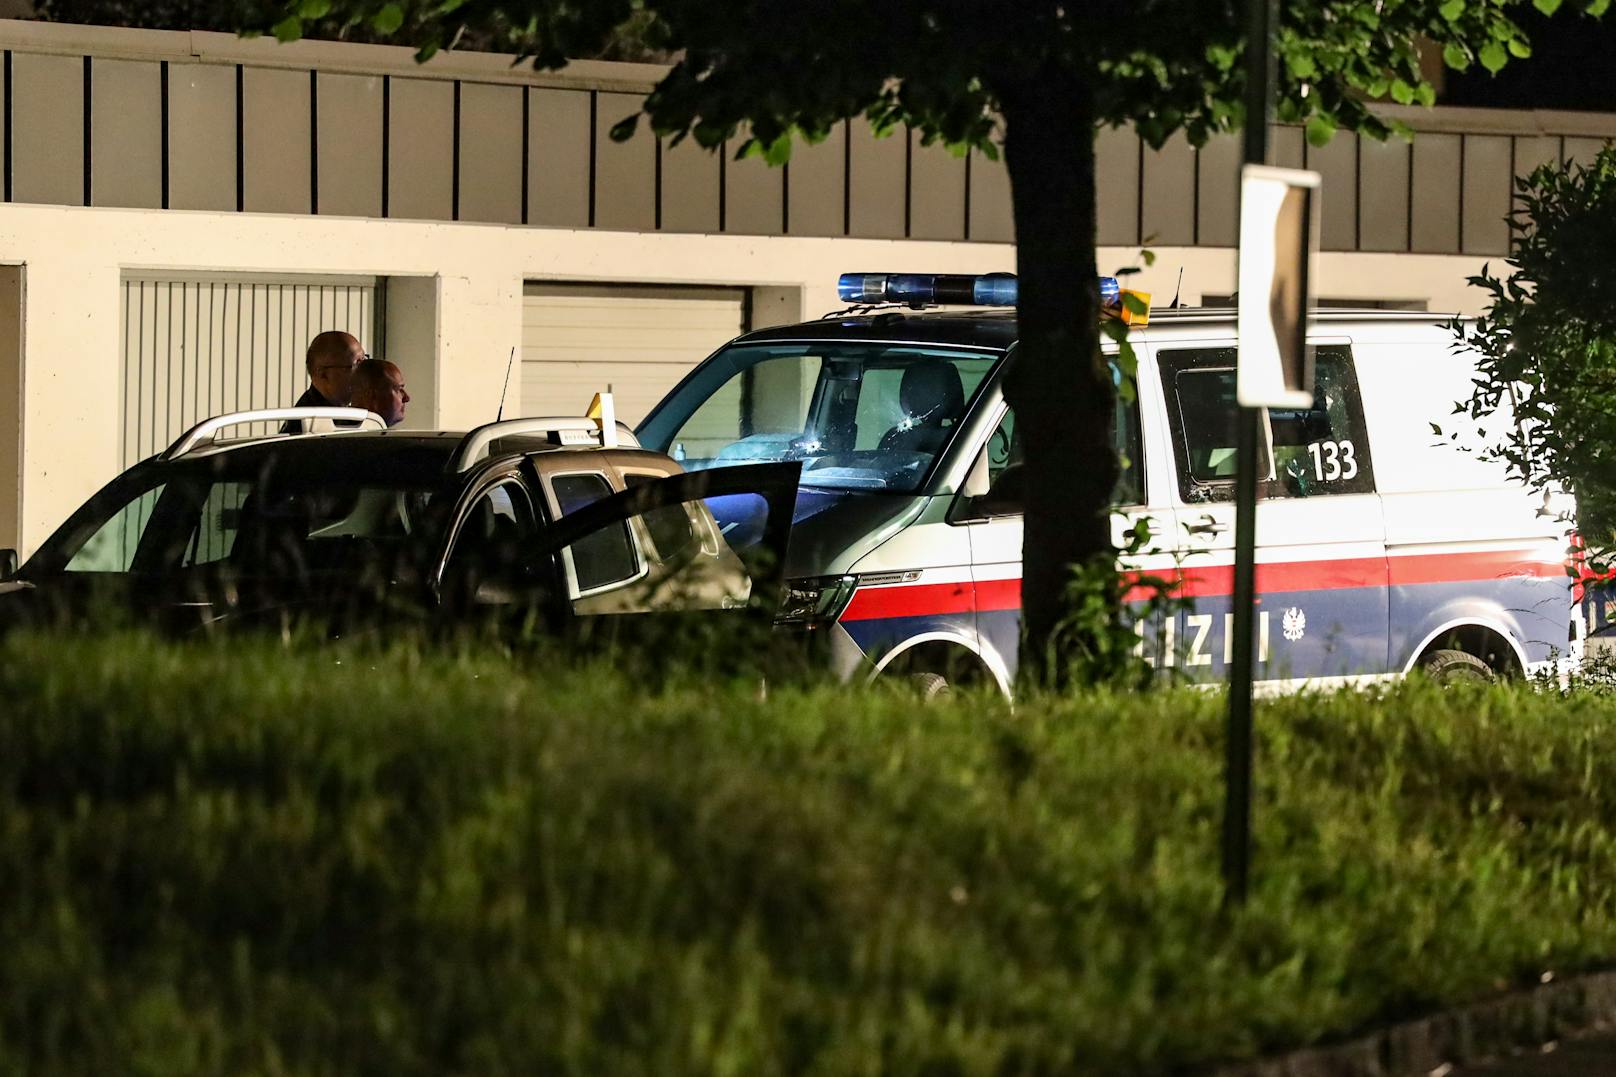 Bilder vom Tatort zeigten unter anderem einen Polizeibus mit mehreren Einschusslöchern in der Windschutzscheibe.